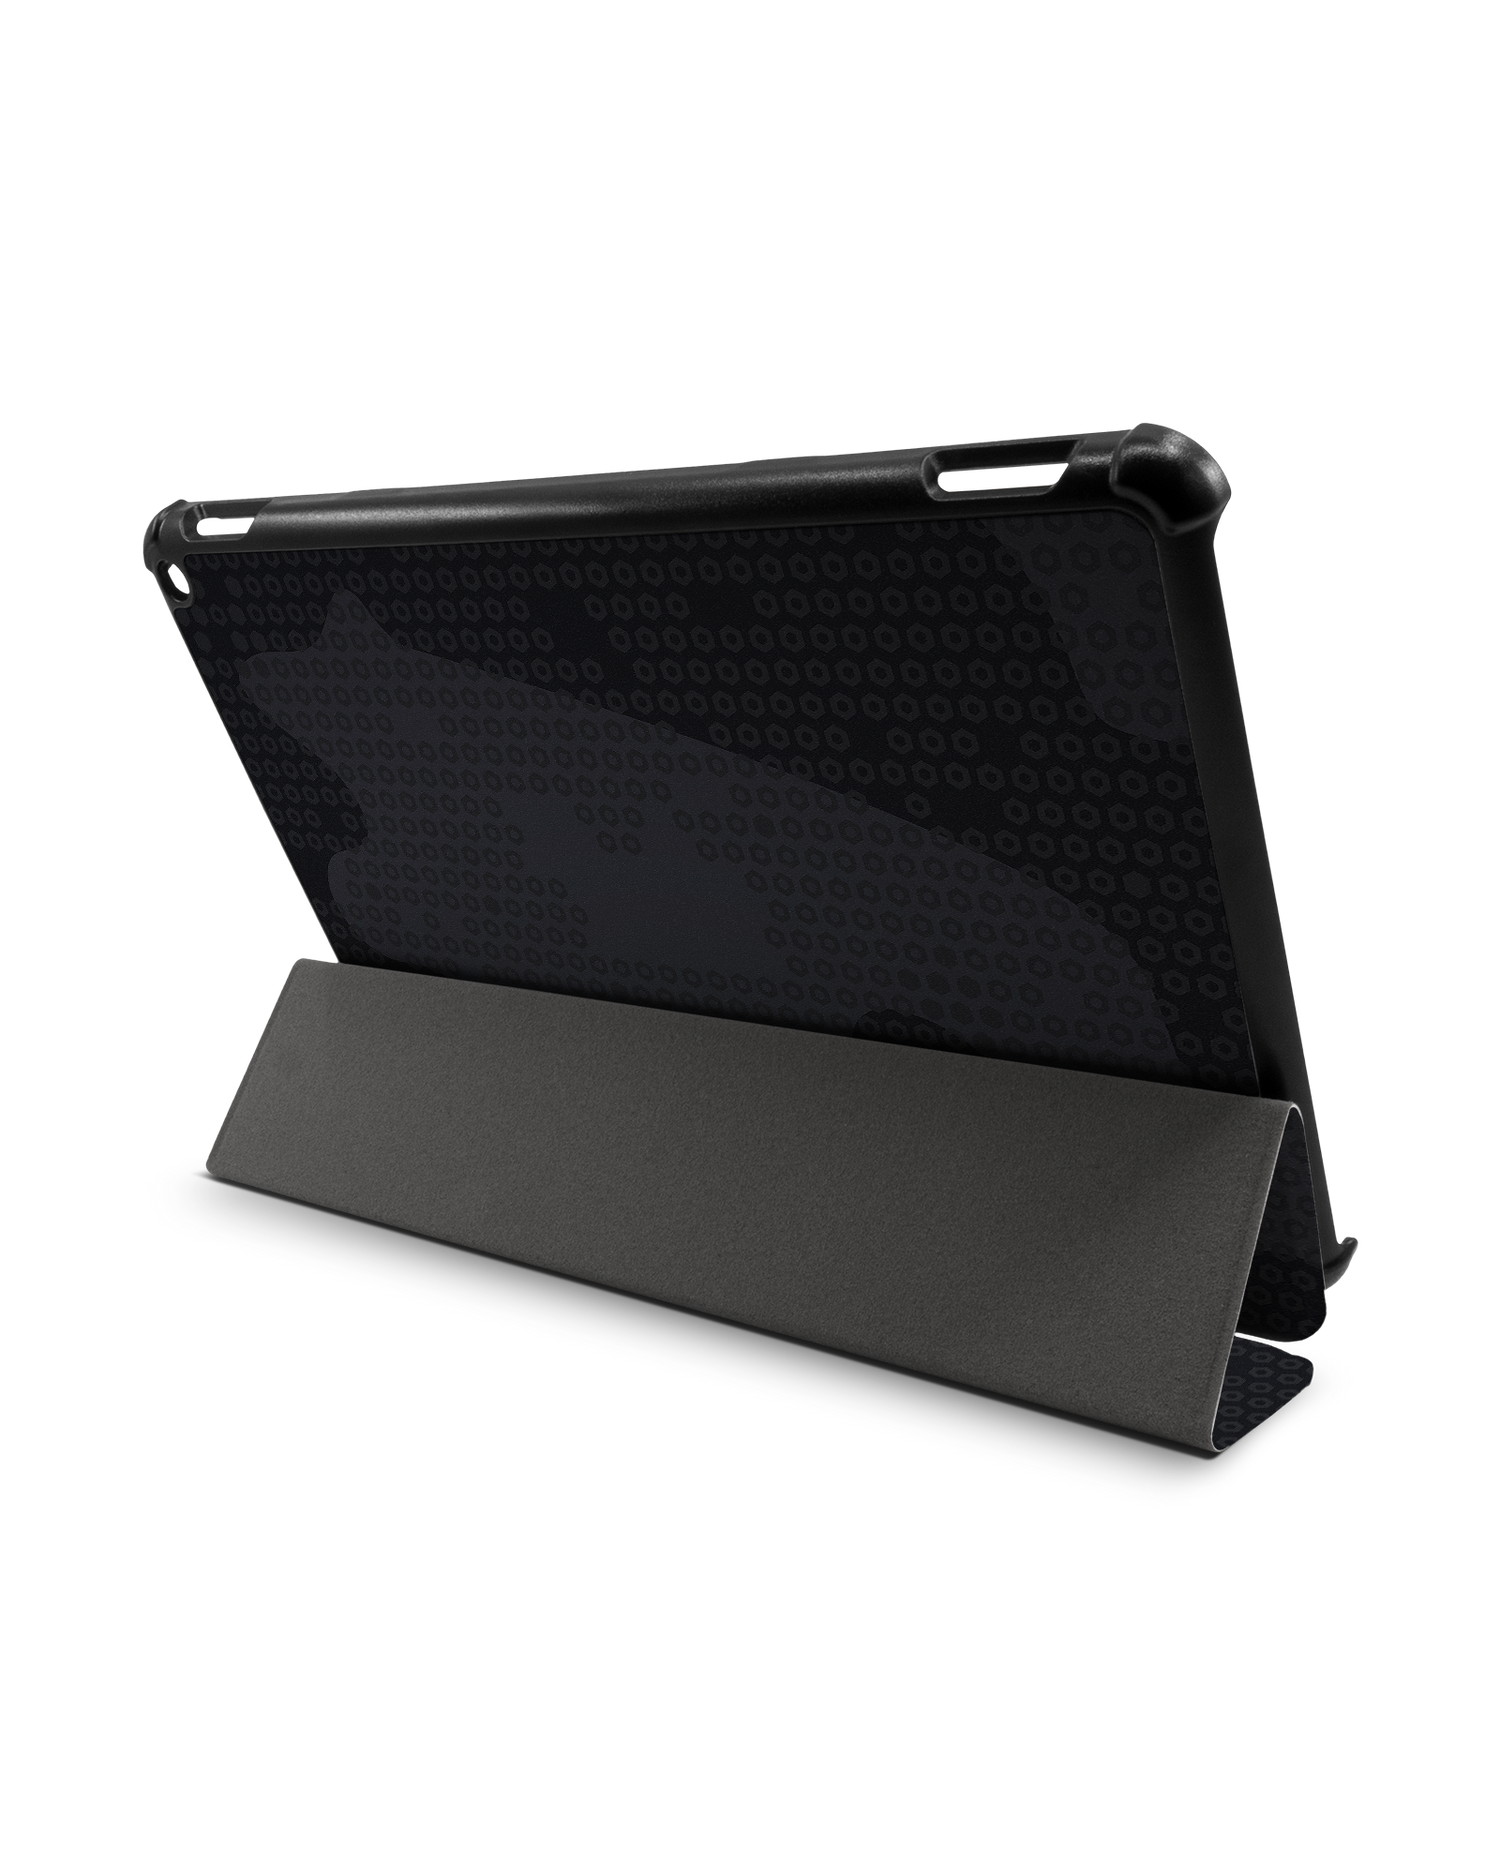 Spec Ops Dark Tablet Smart Case für Amazon Fire HD 10 (2021): Aufgestellt im Querformat